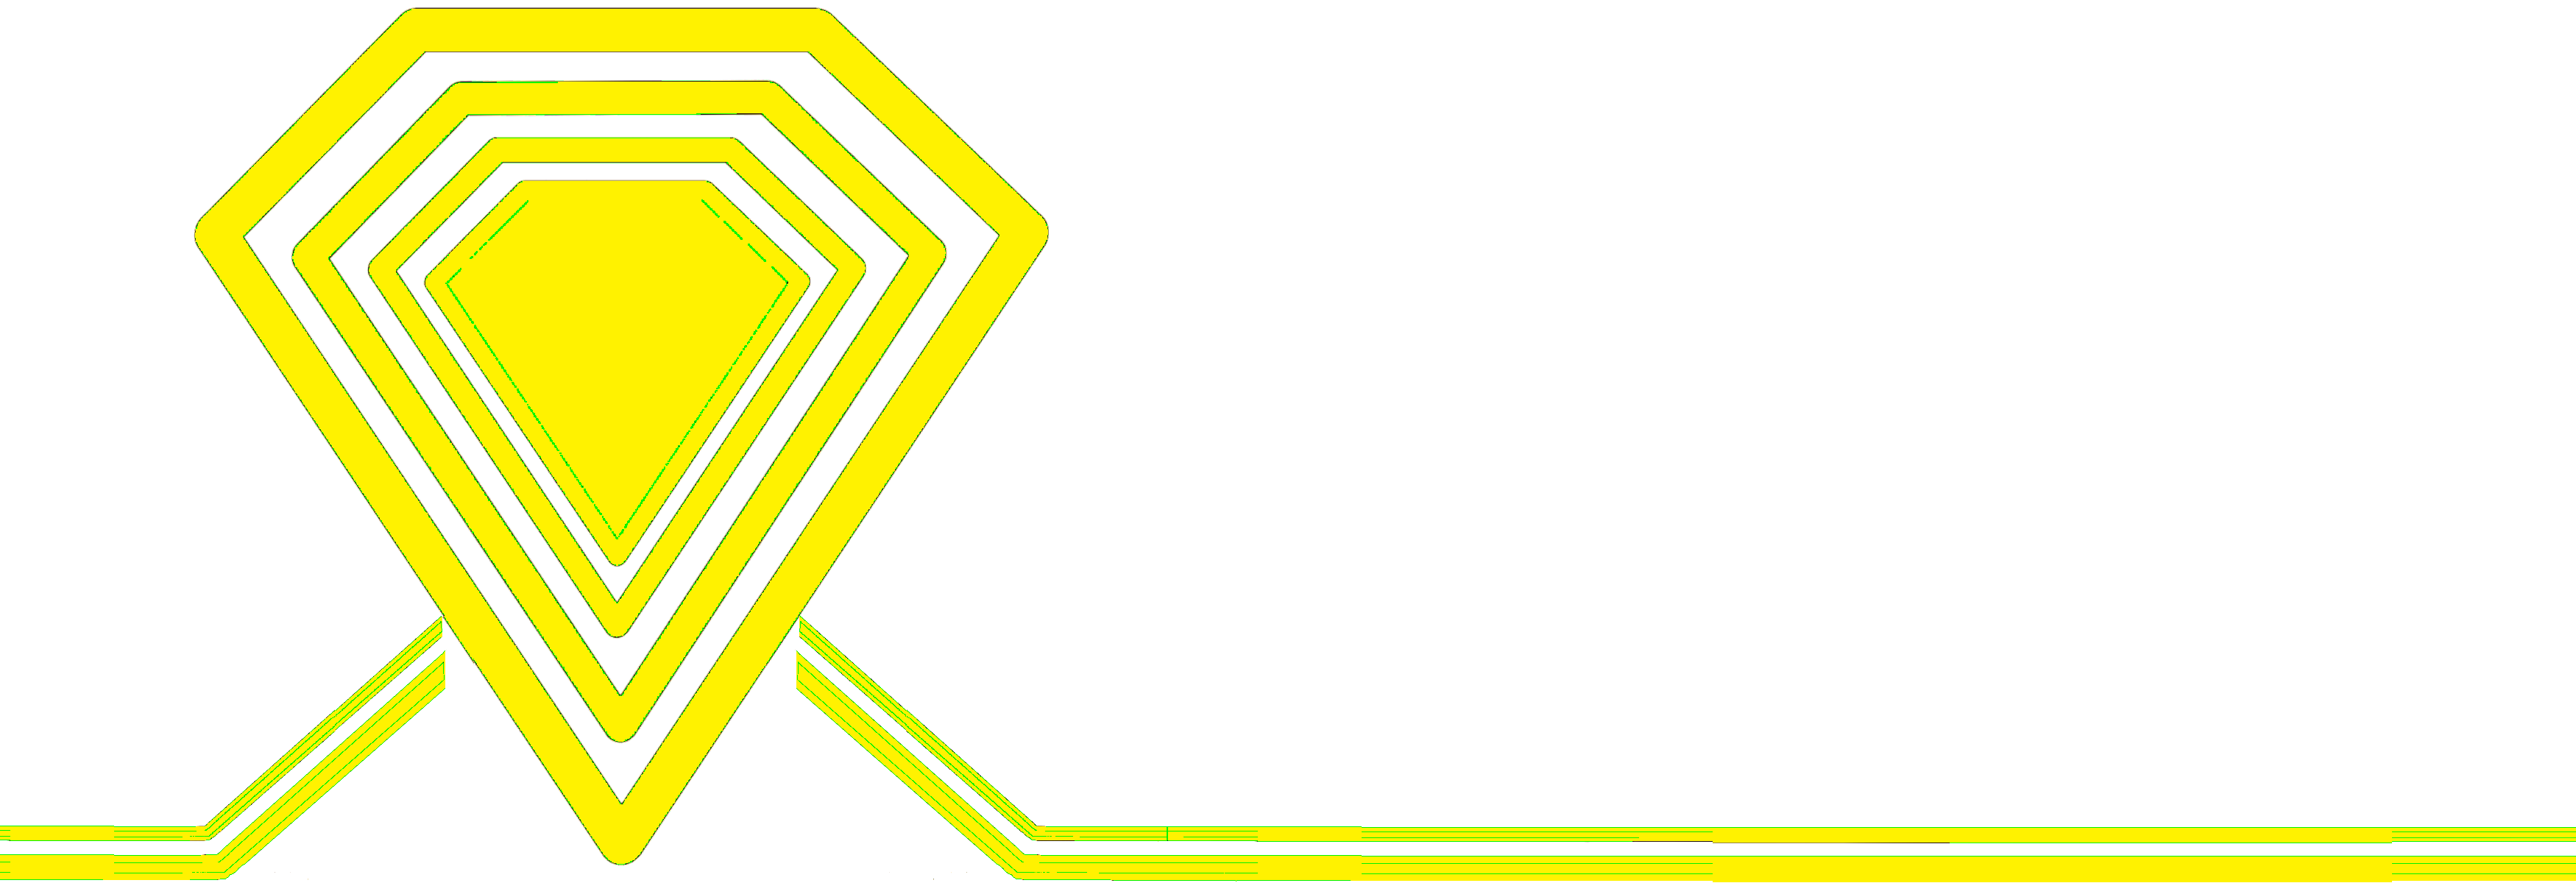 Pelger-4you